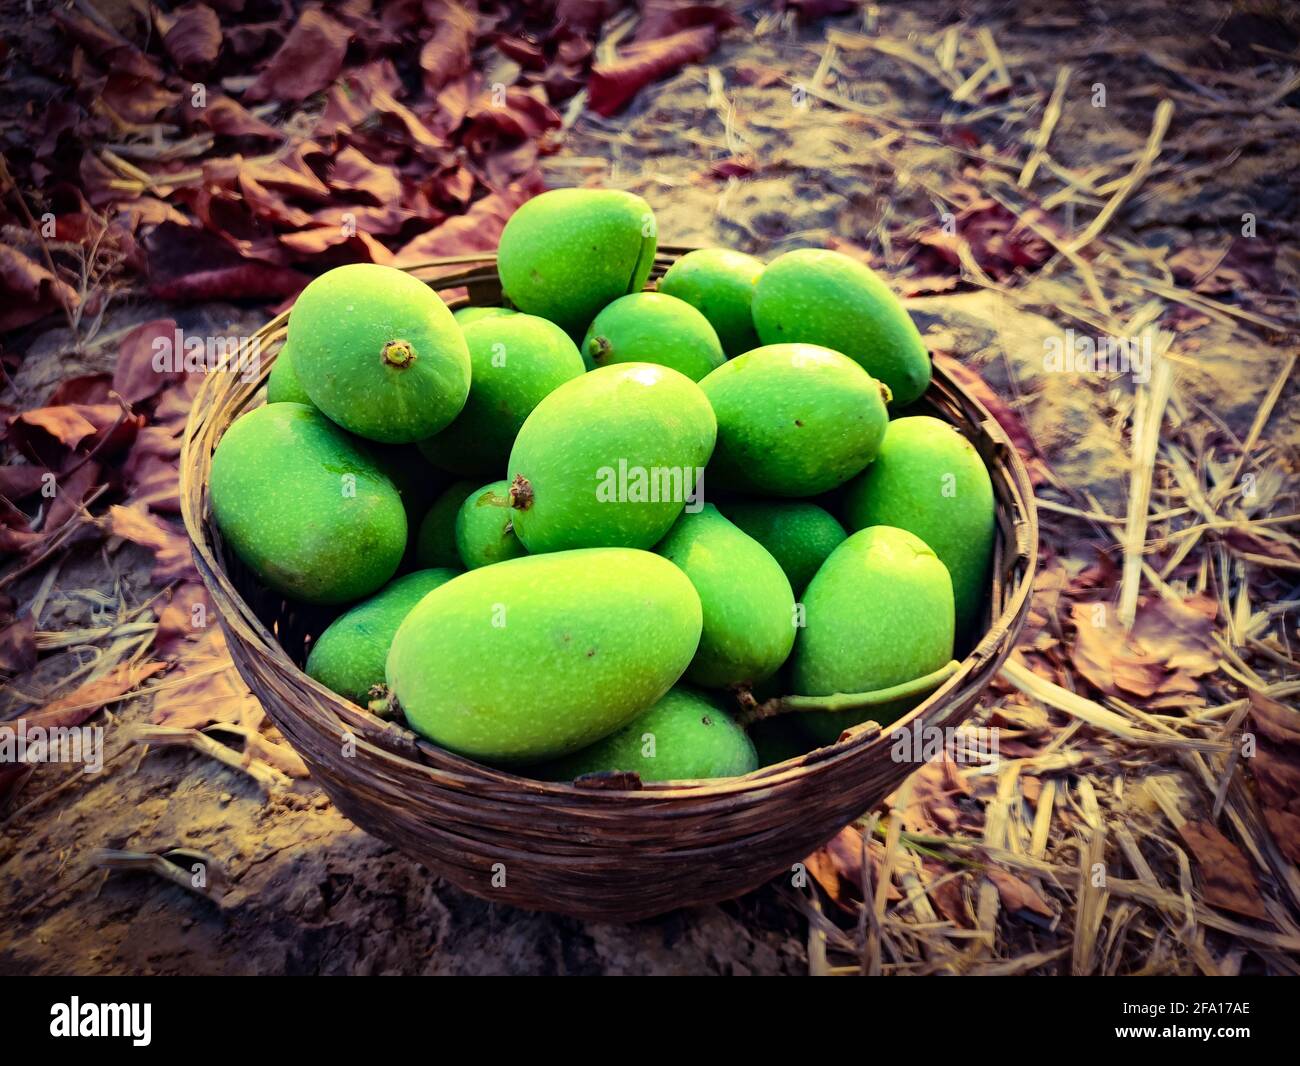 Ein Bild von frischer grüner Mango auf einem Holzkorb Stockfoto